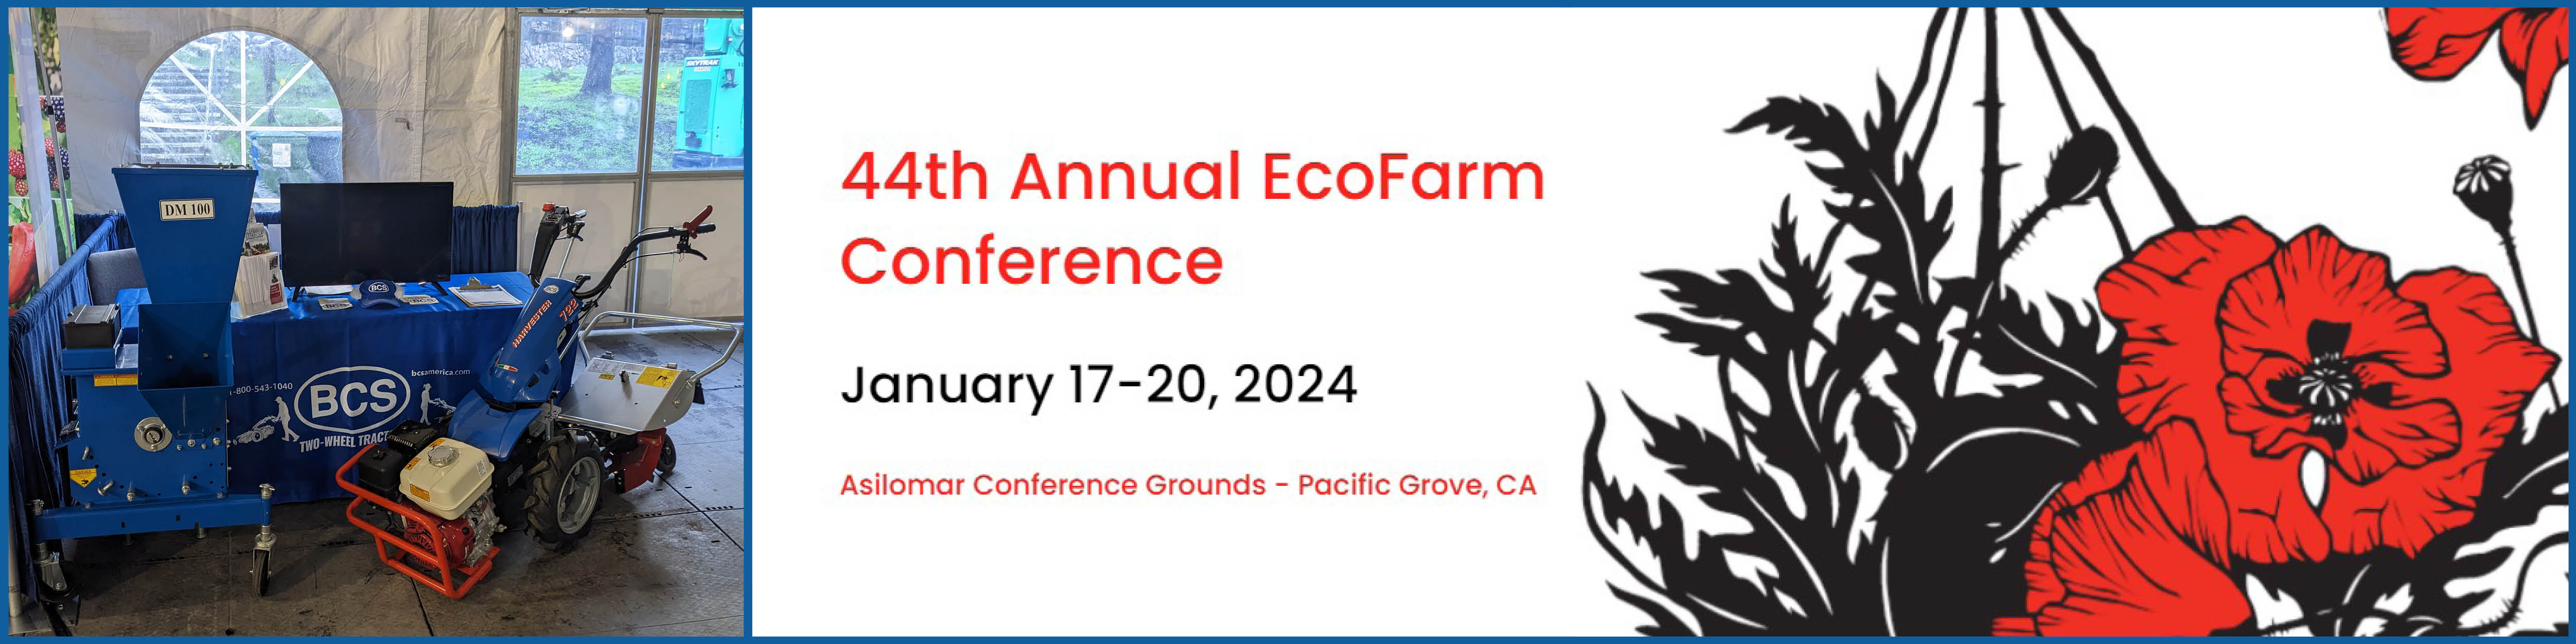 EcoFarm Conference - Pacific Grove, CA